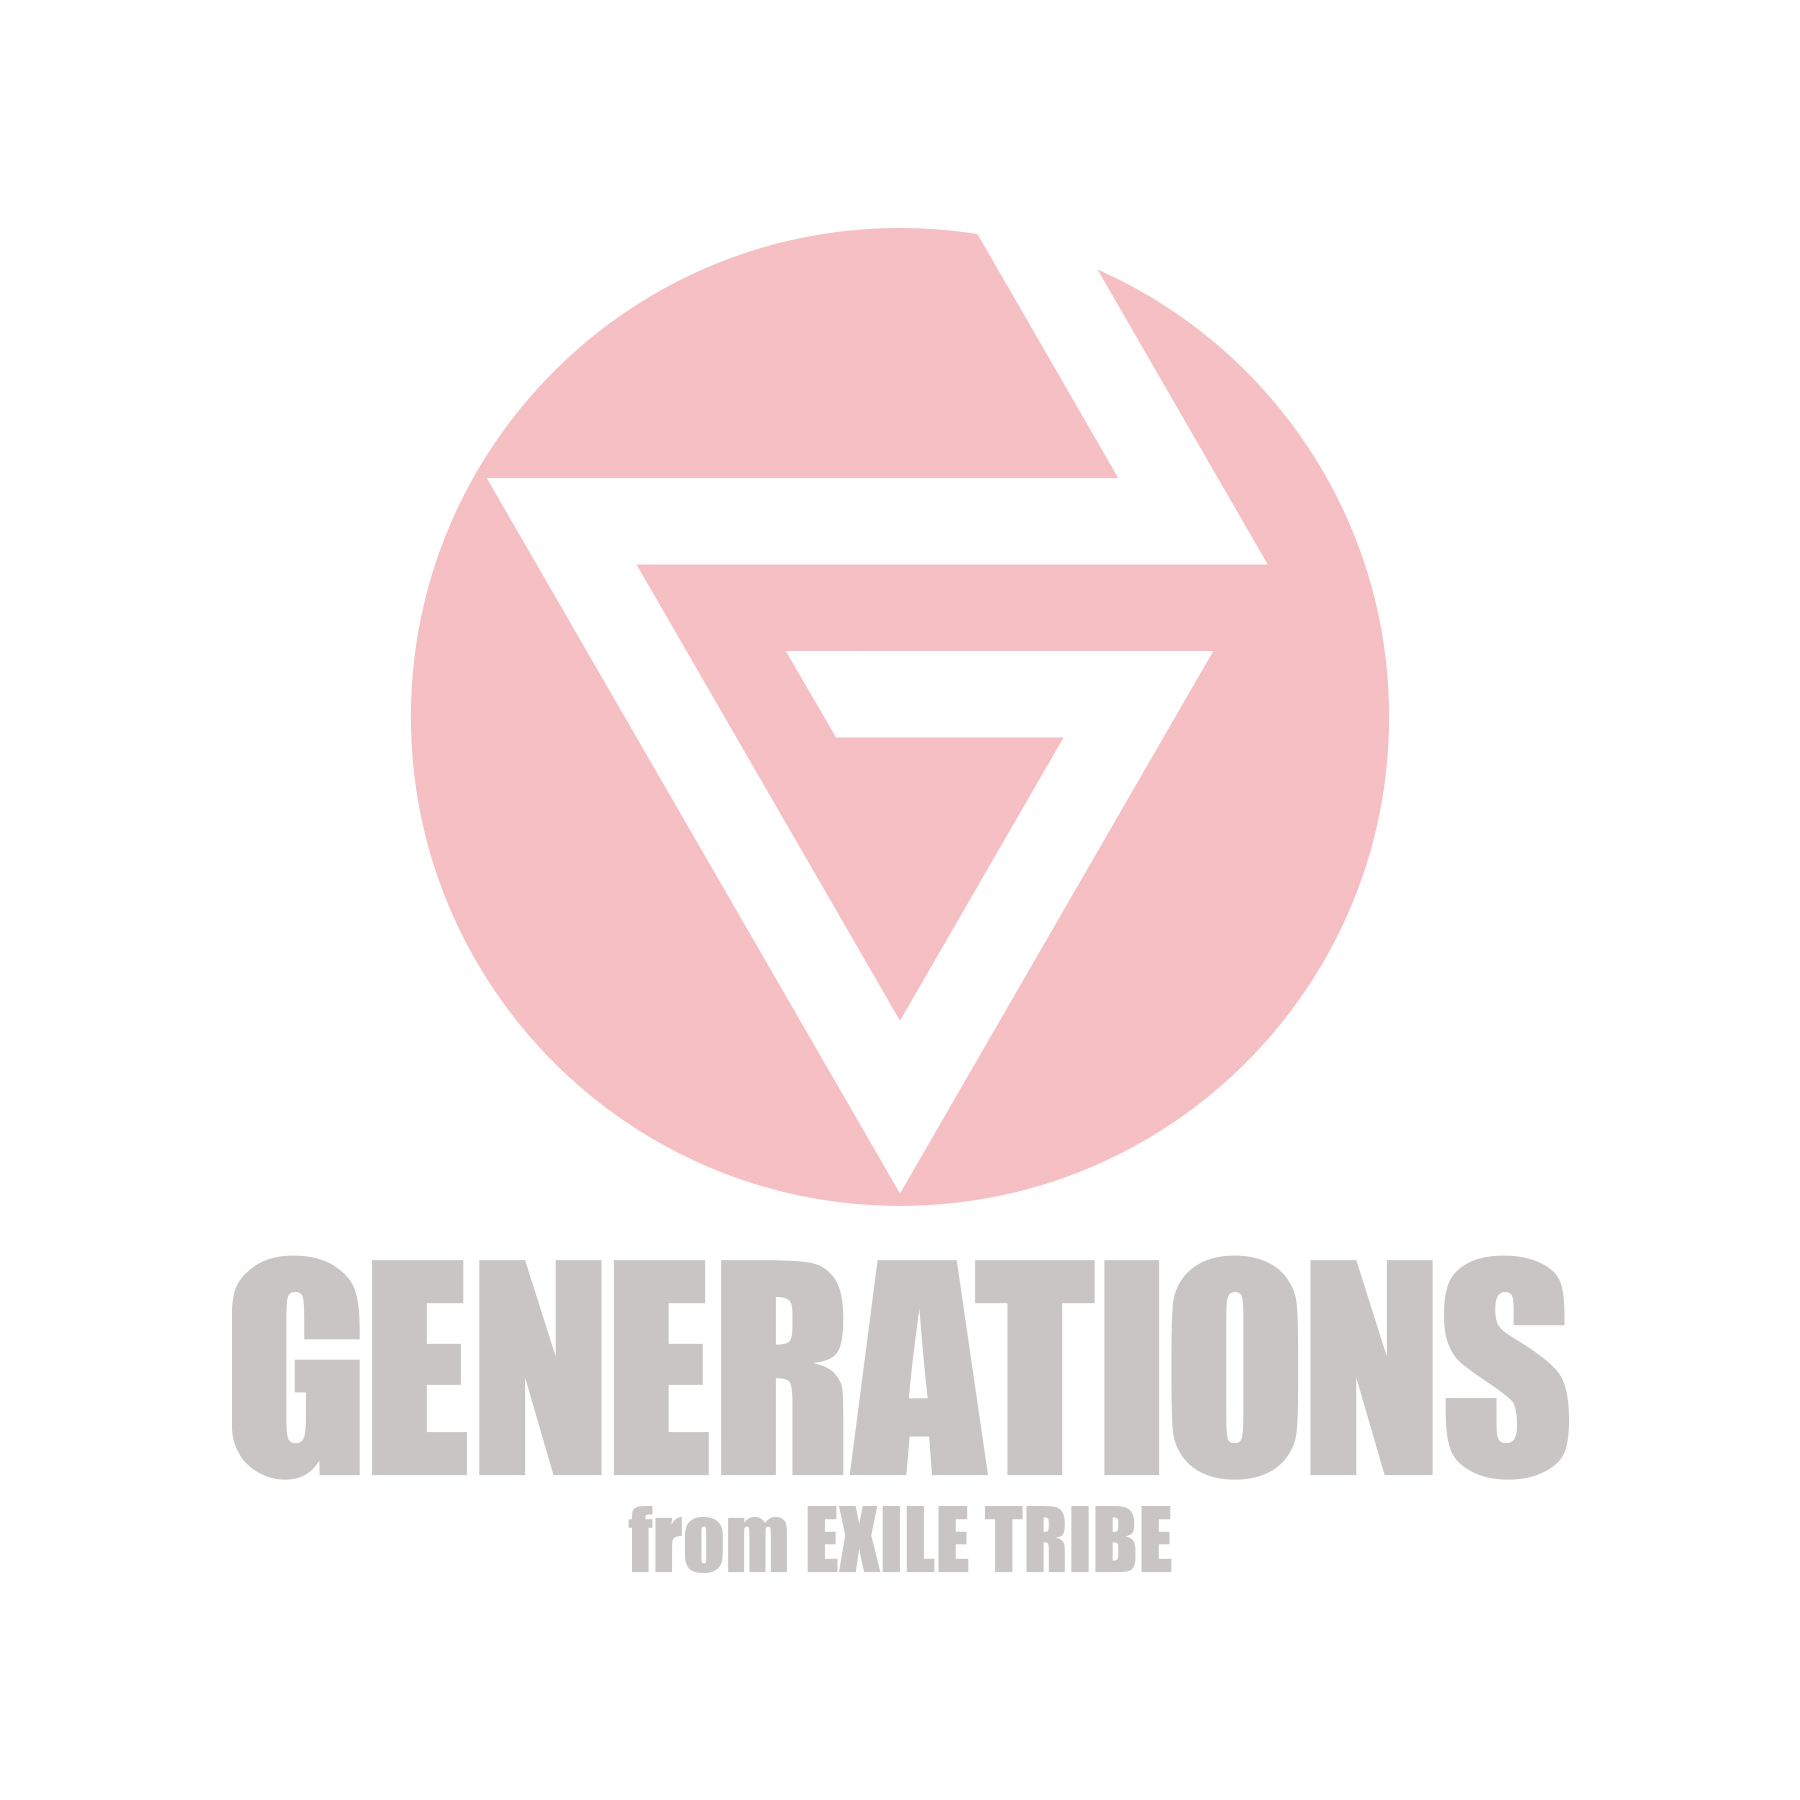 新しい Generations ロゴ 背景透過 メドジャンジクロ